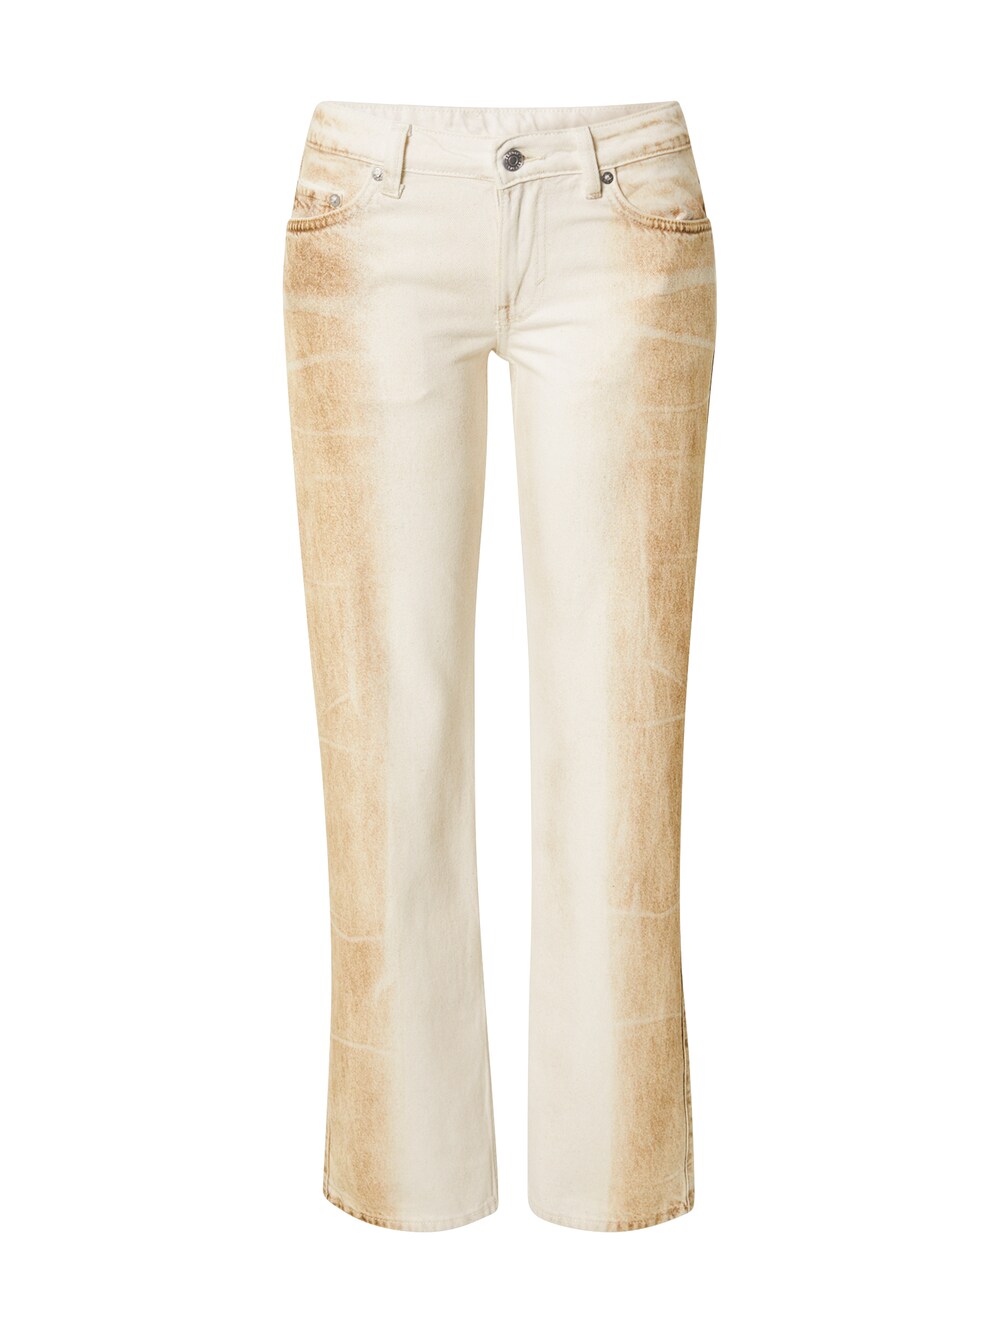 Обычные джинсы Weekday Arrow, светло-коричневый